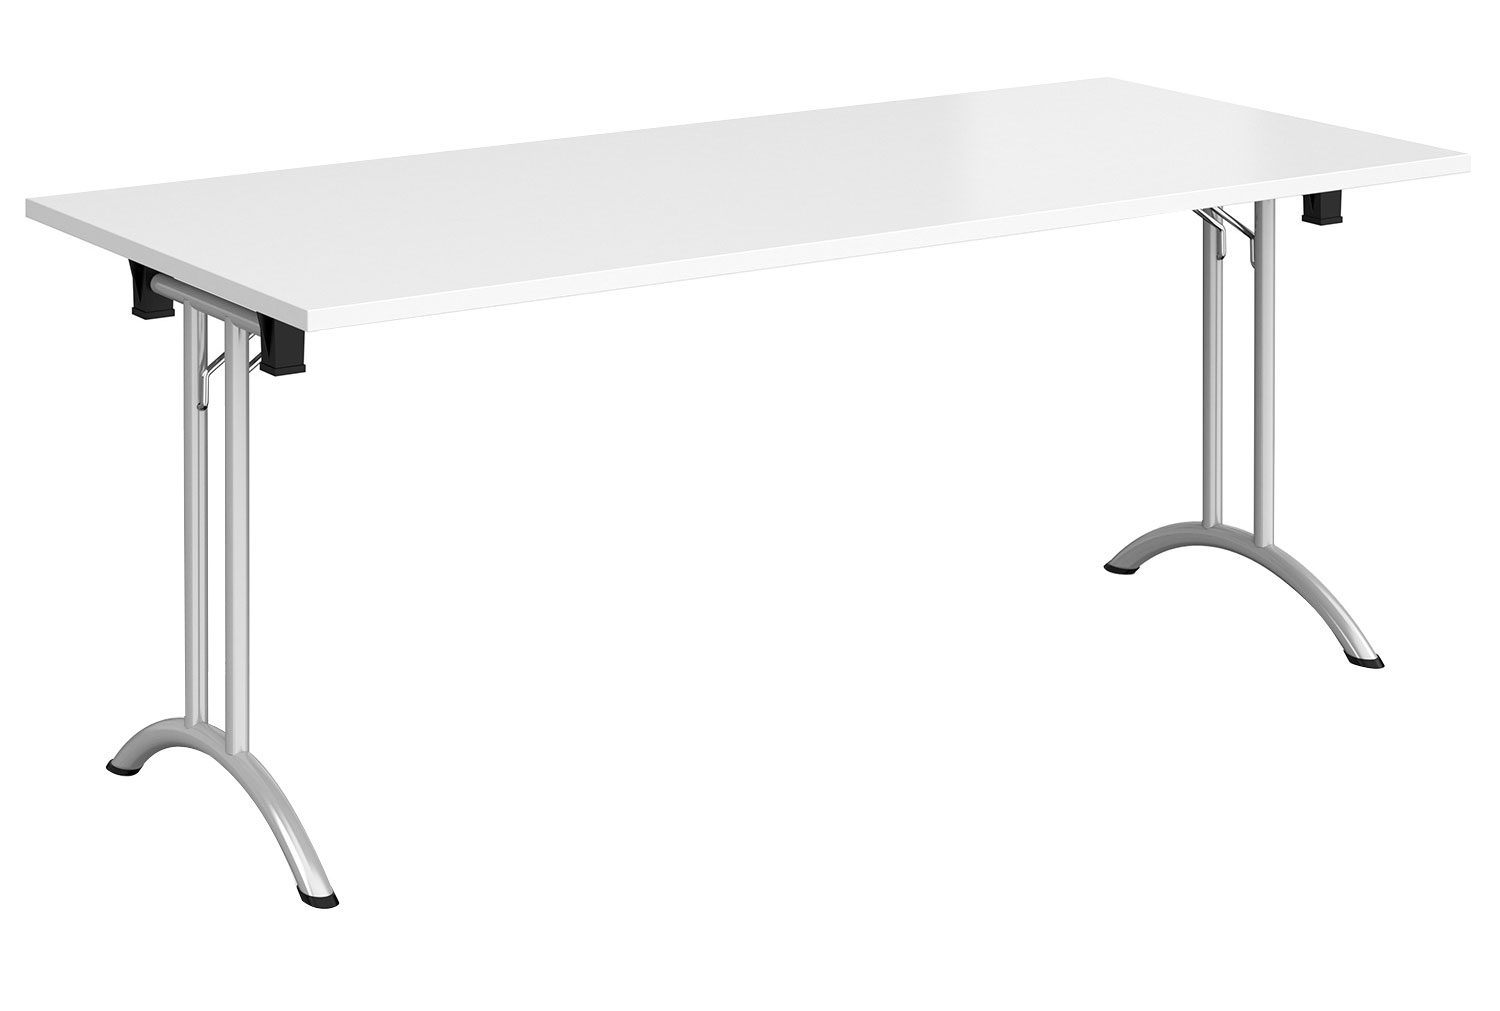 Zeeland Rectangular Folding Table, 180wx80dx73h (cm), Silver Frame, White, Fully Installed